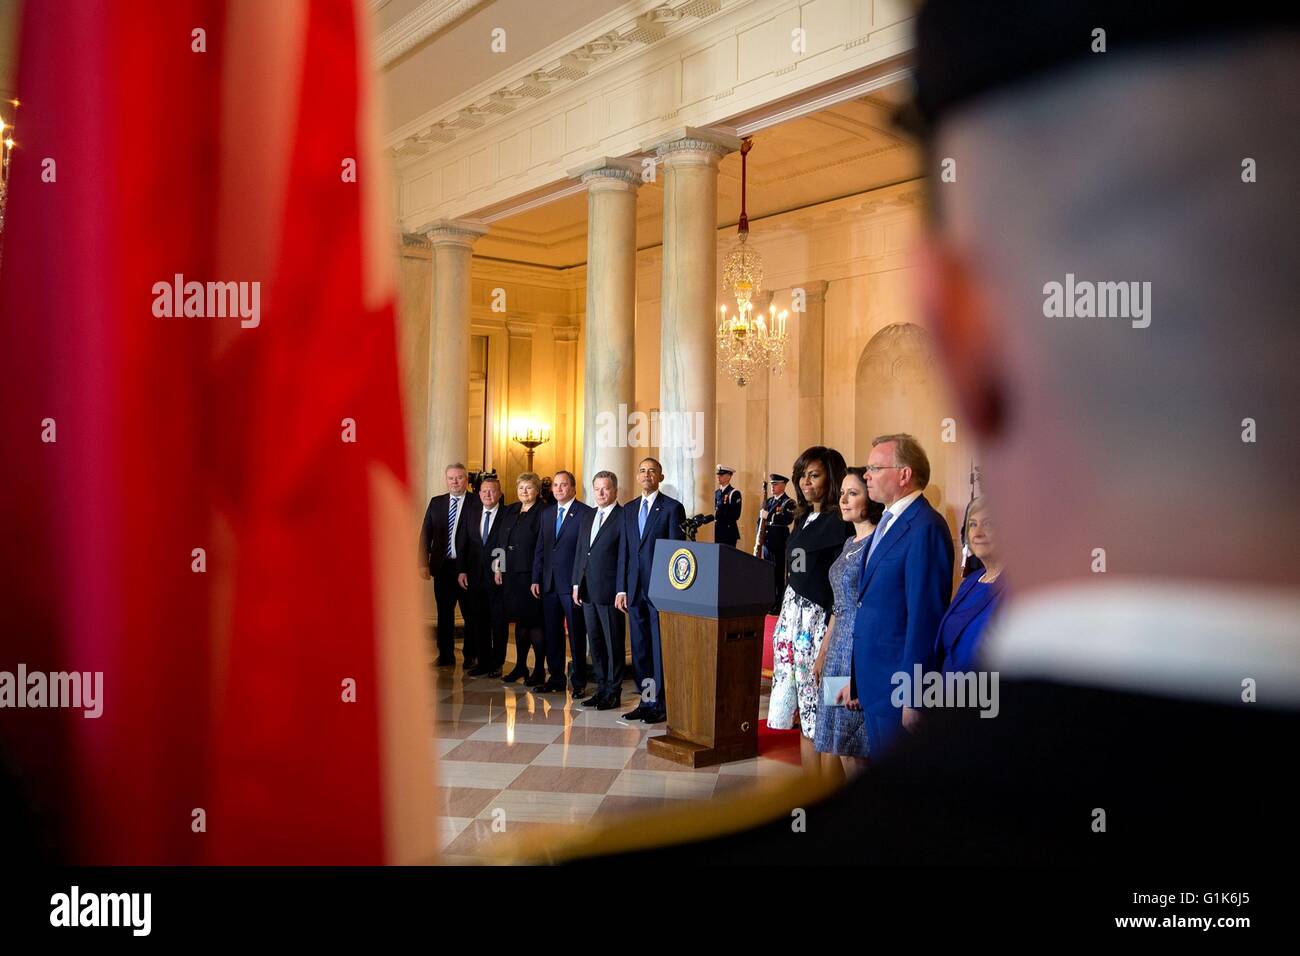 Il Presidente degli Stati Uniti Barack Obama e il leader nordici visualizzare la presentazione di colori nel grande atrio durante la cerimonia di benvenuto alla Casa Bianca il 13 maggio 2016 a Washington, DC. Foto Stock